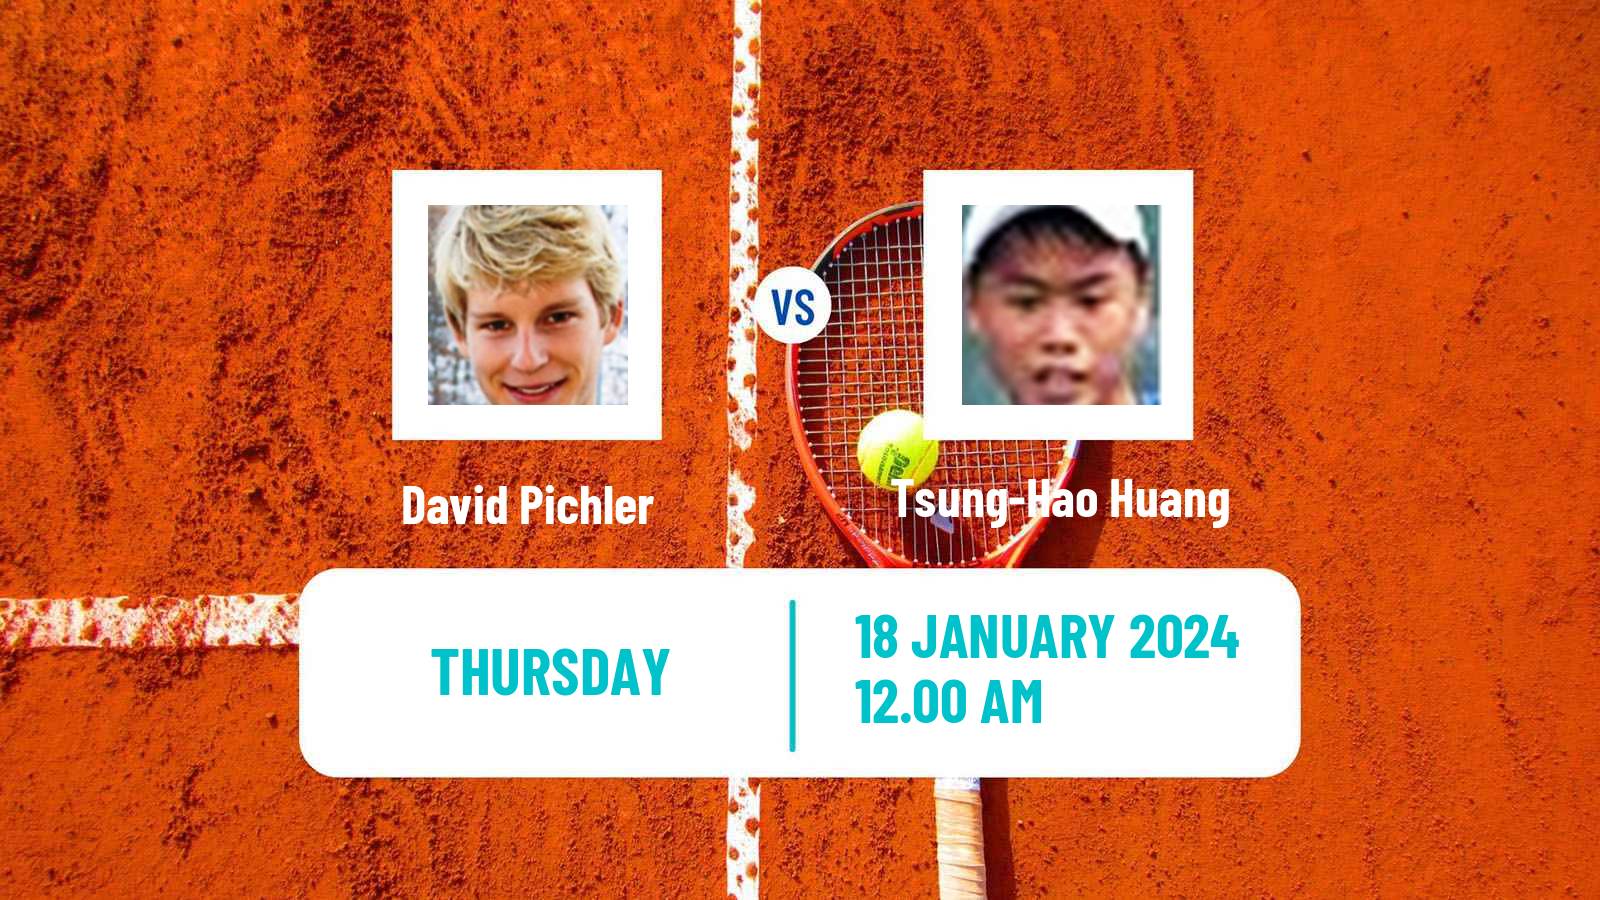 Tennis ITF M25 Bhopal Men David Pichler - Tsung-Hao Huang